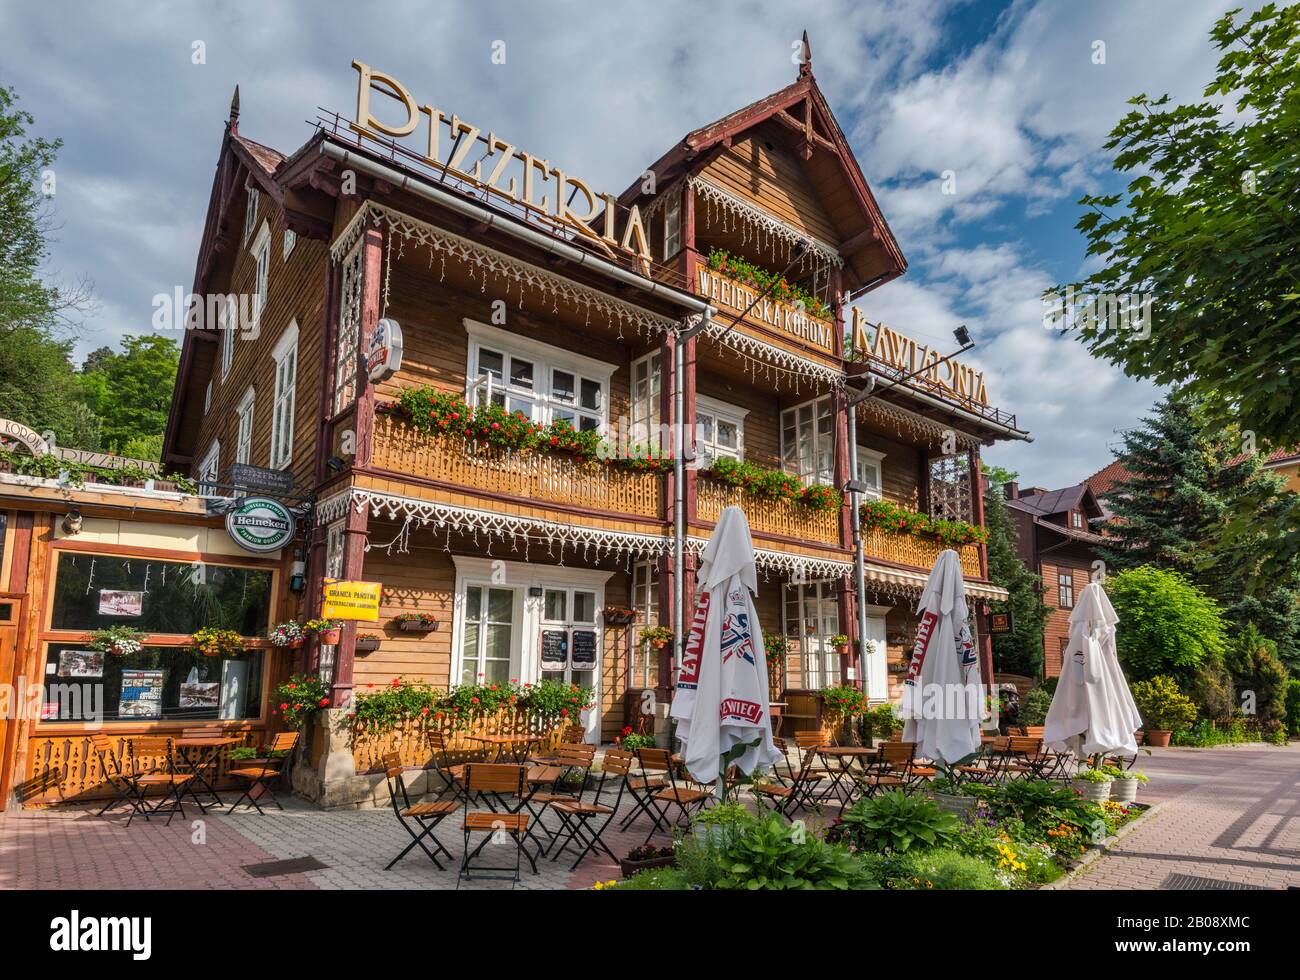 Storica villa in legno ispirata allo stile chalet svizzero nella località termale Krynica Zdroj, nella regione di Beskid Sadecki, nei Carpazi occidentali, in Malopolska, in Polonia Foto Stock